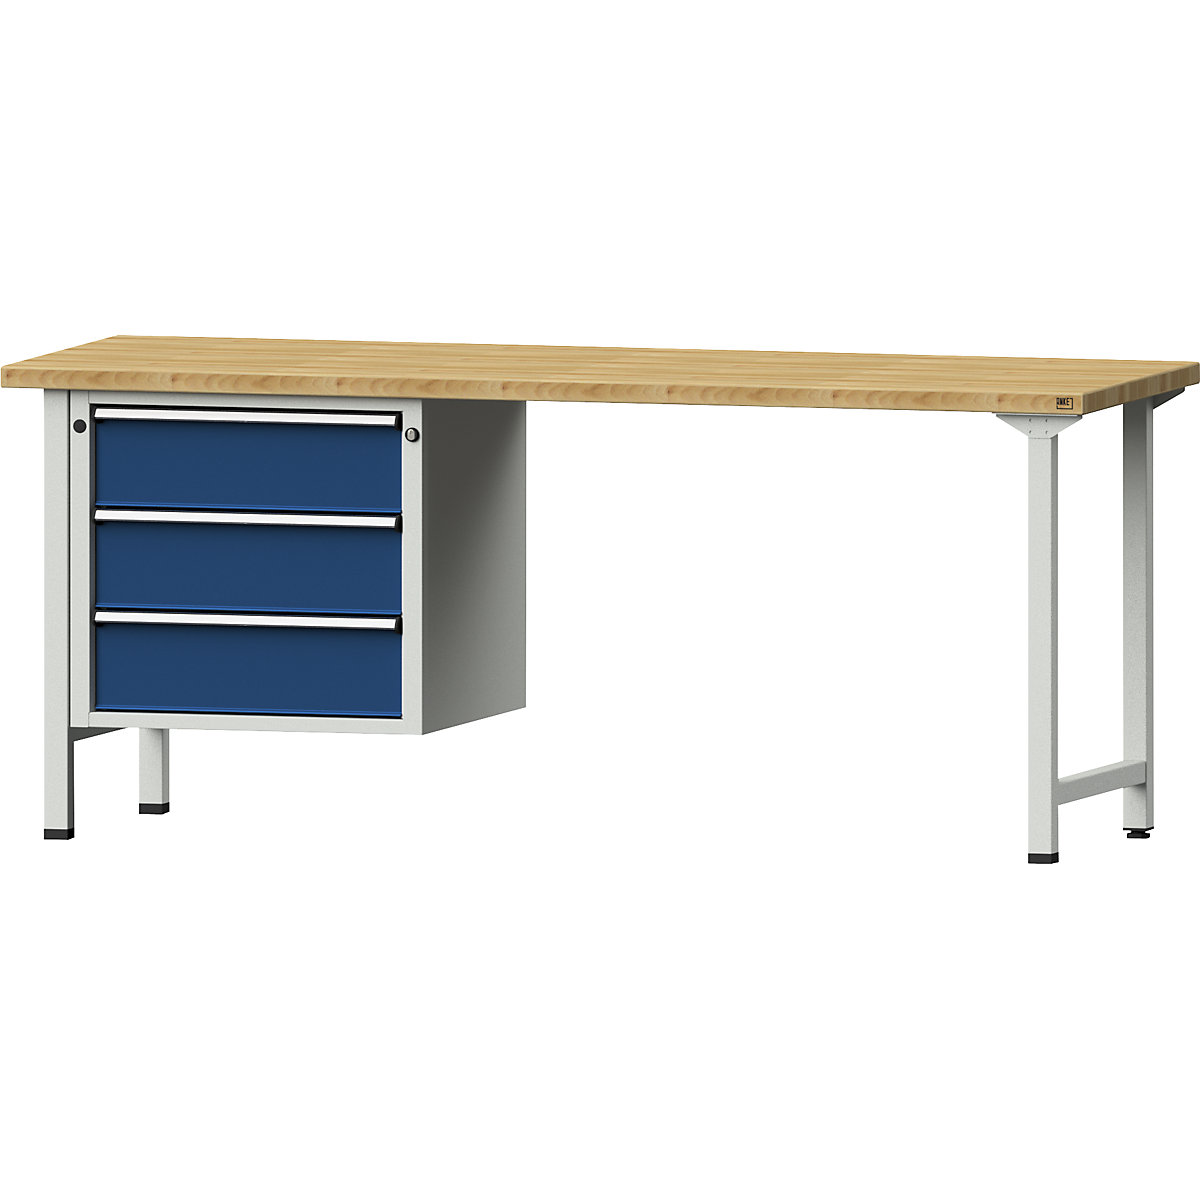 Stół warsztatowy, konstrukcja ramowa – ANKE